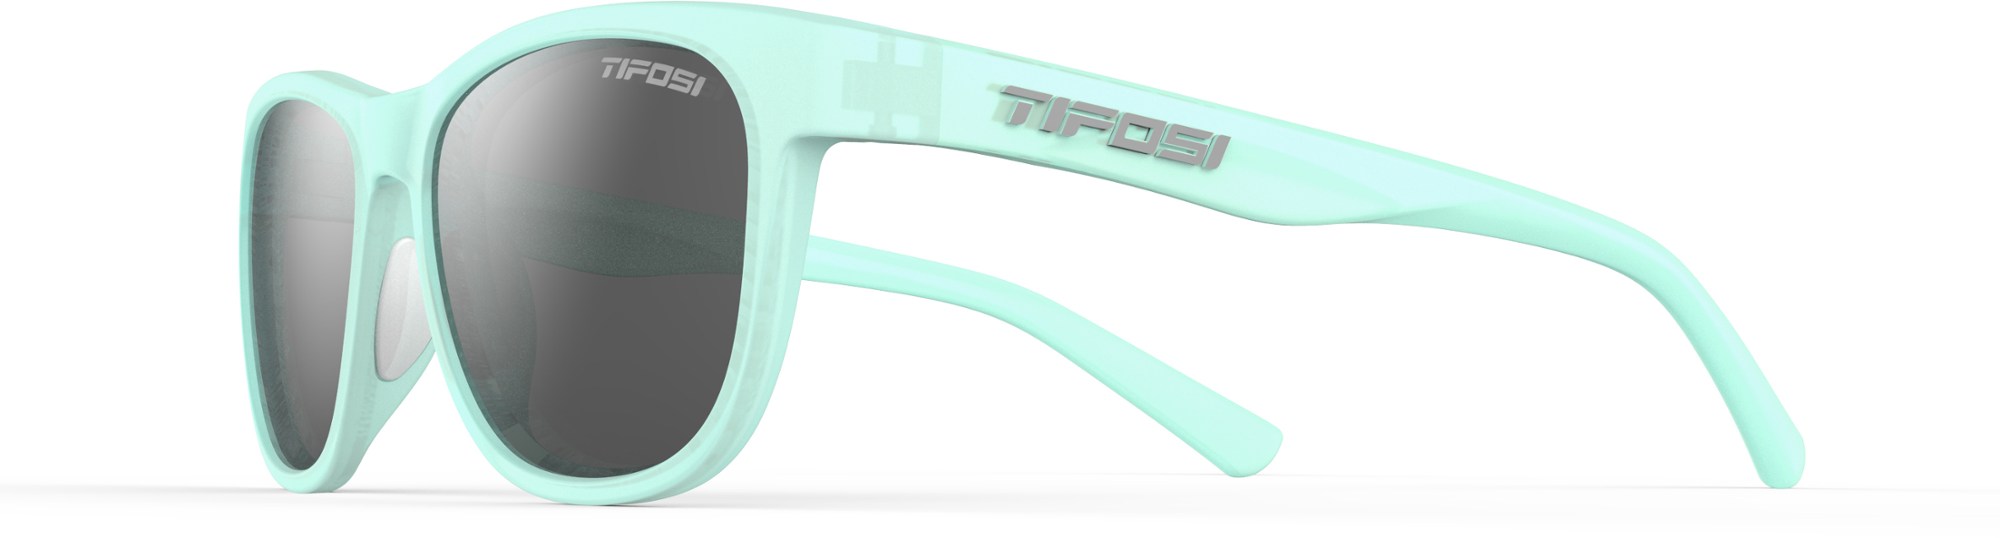 Поляризованные солнцезащитные очки Swank Tifosi, синий